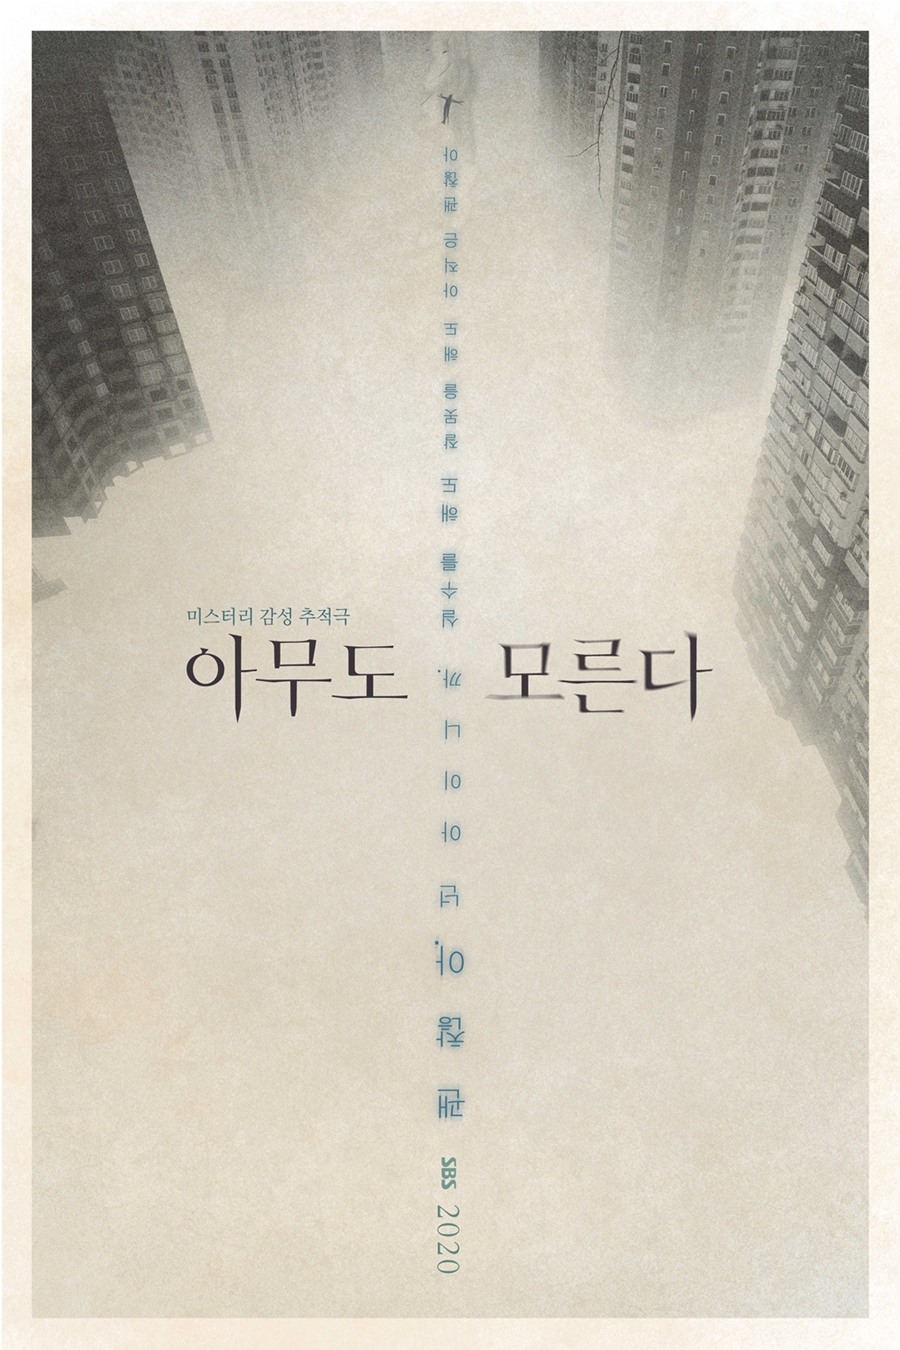 '아무도 모른다' 티저 포스터 공개 / 사진: SBS 제공